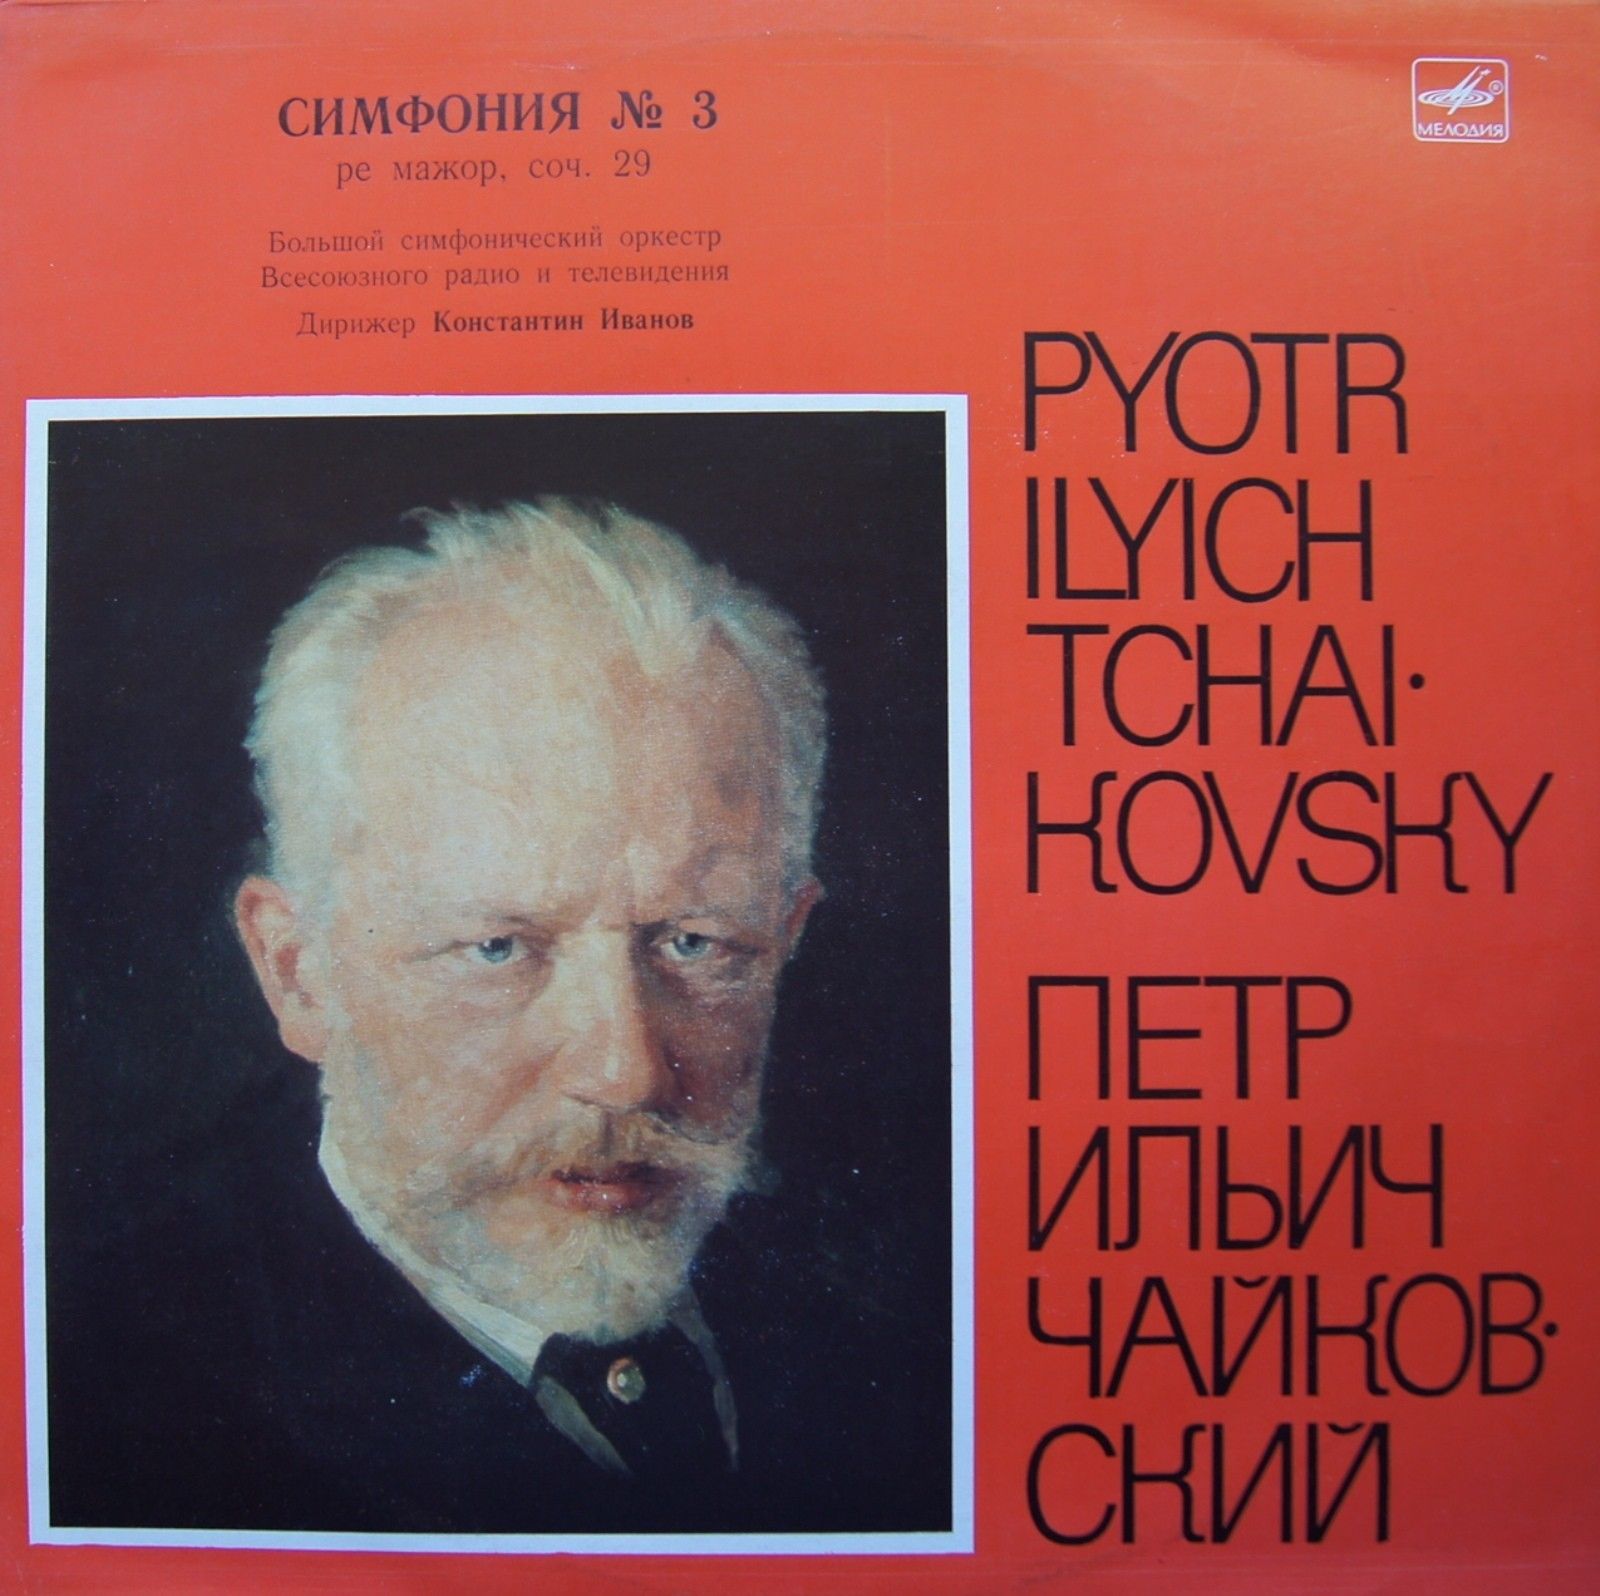 П. ЧАЙКОВСКИЙ (1840-1893): Симфония № 3 ре мажор, соч. 29 (К. Иванов)